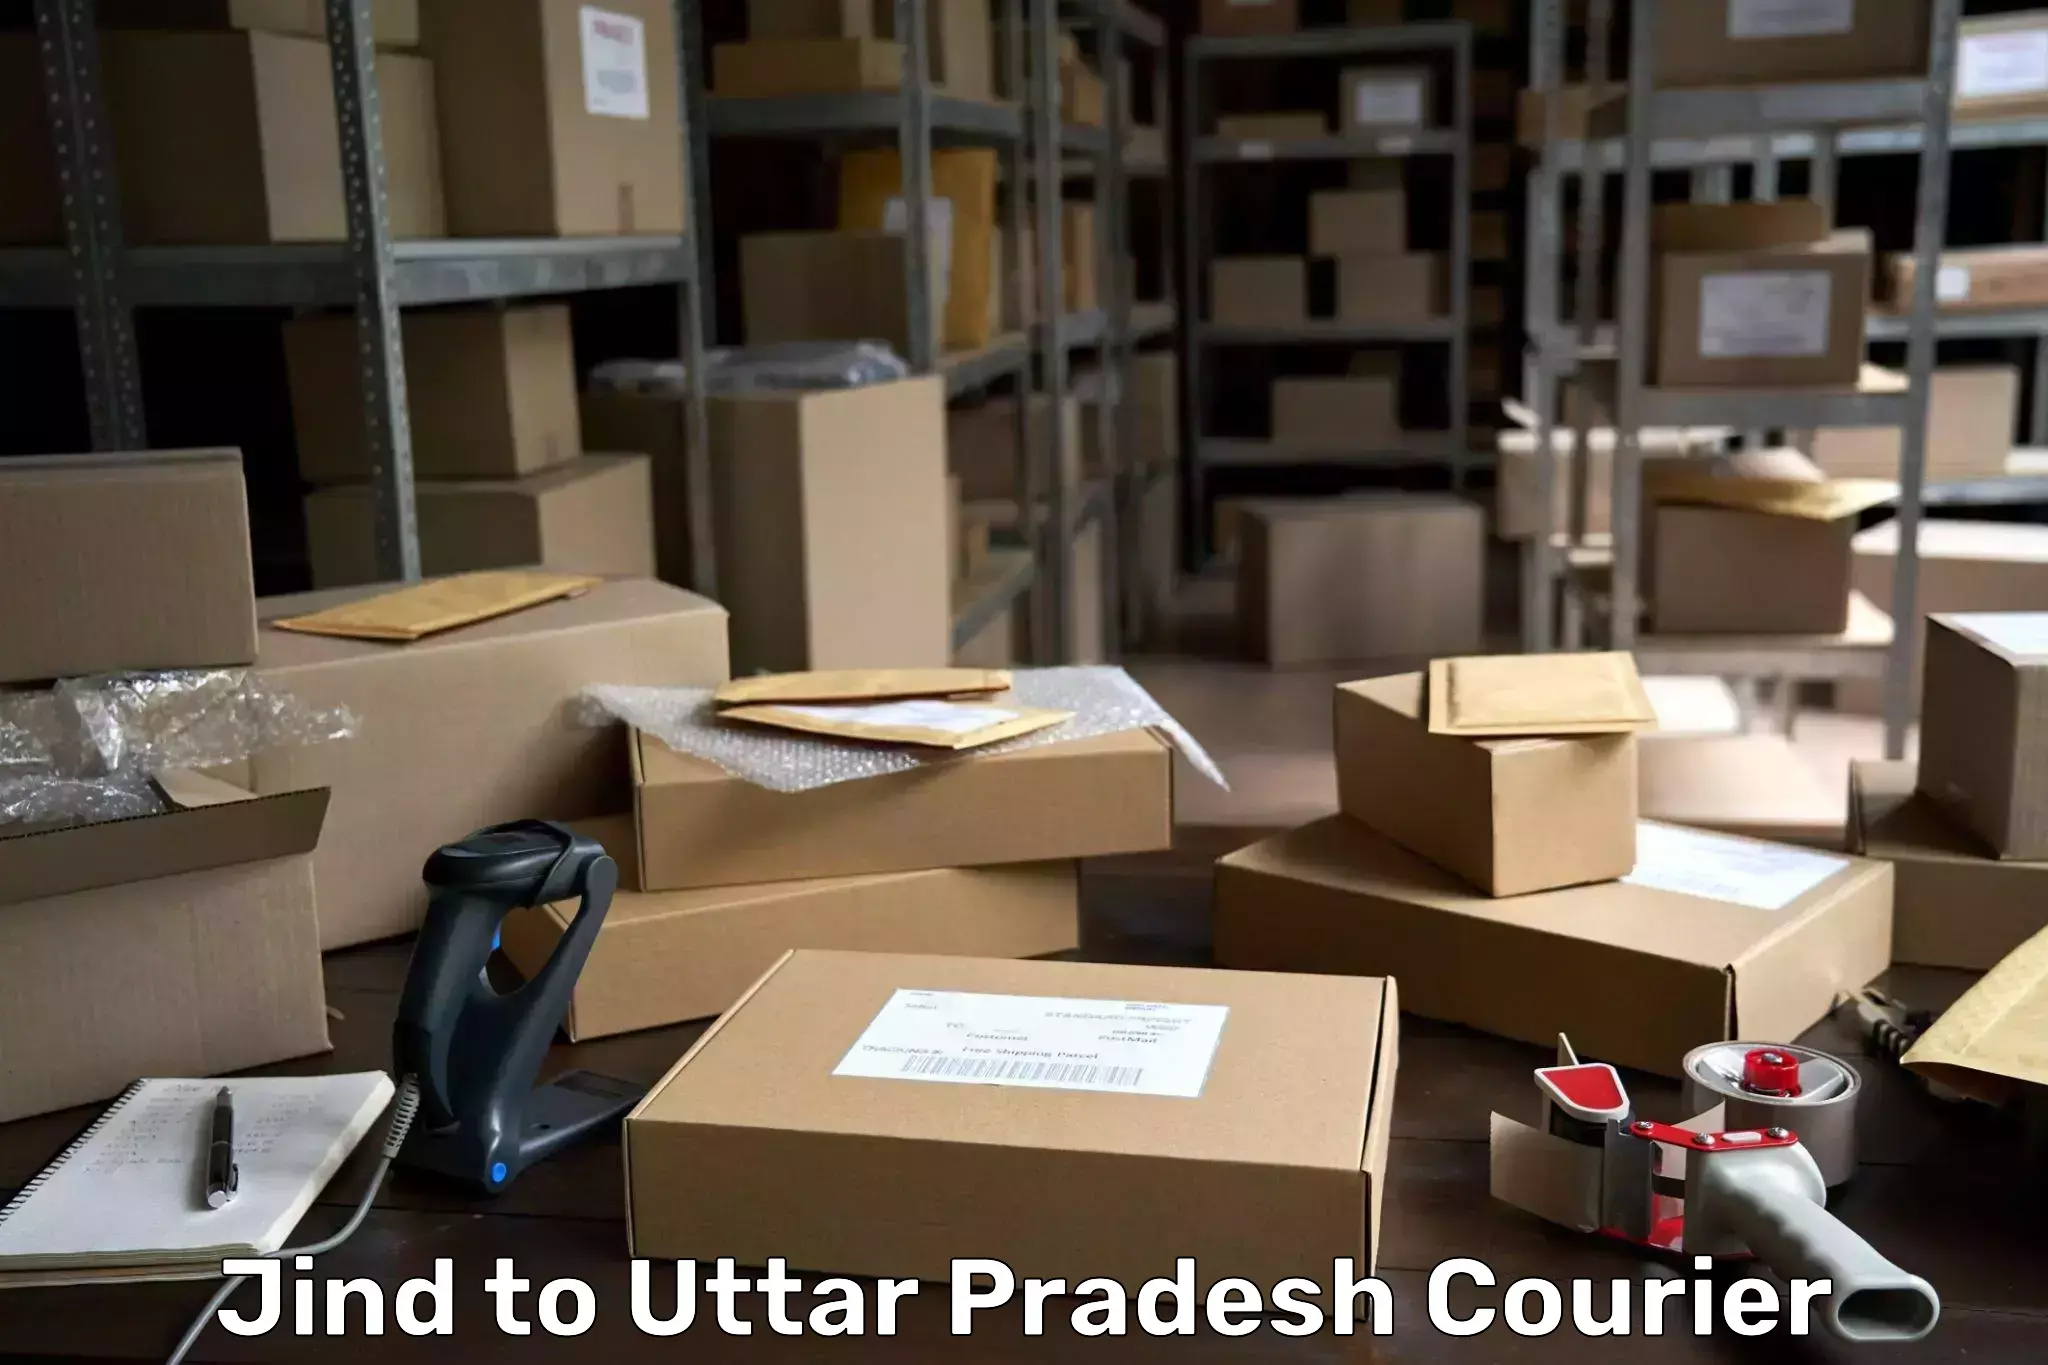 Courier service comparison Jind to Uttar Pradesh